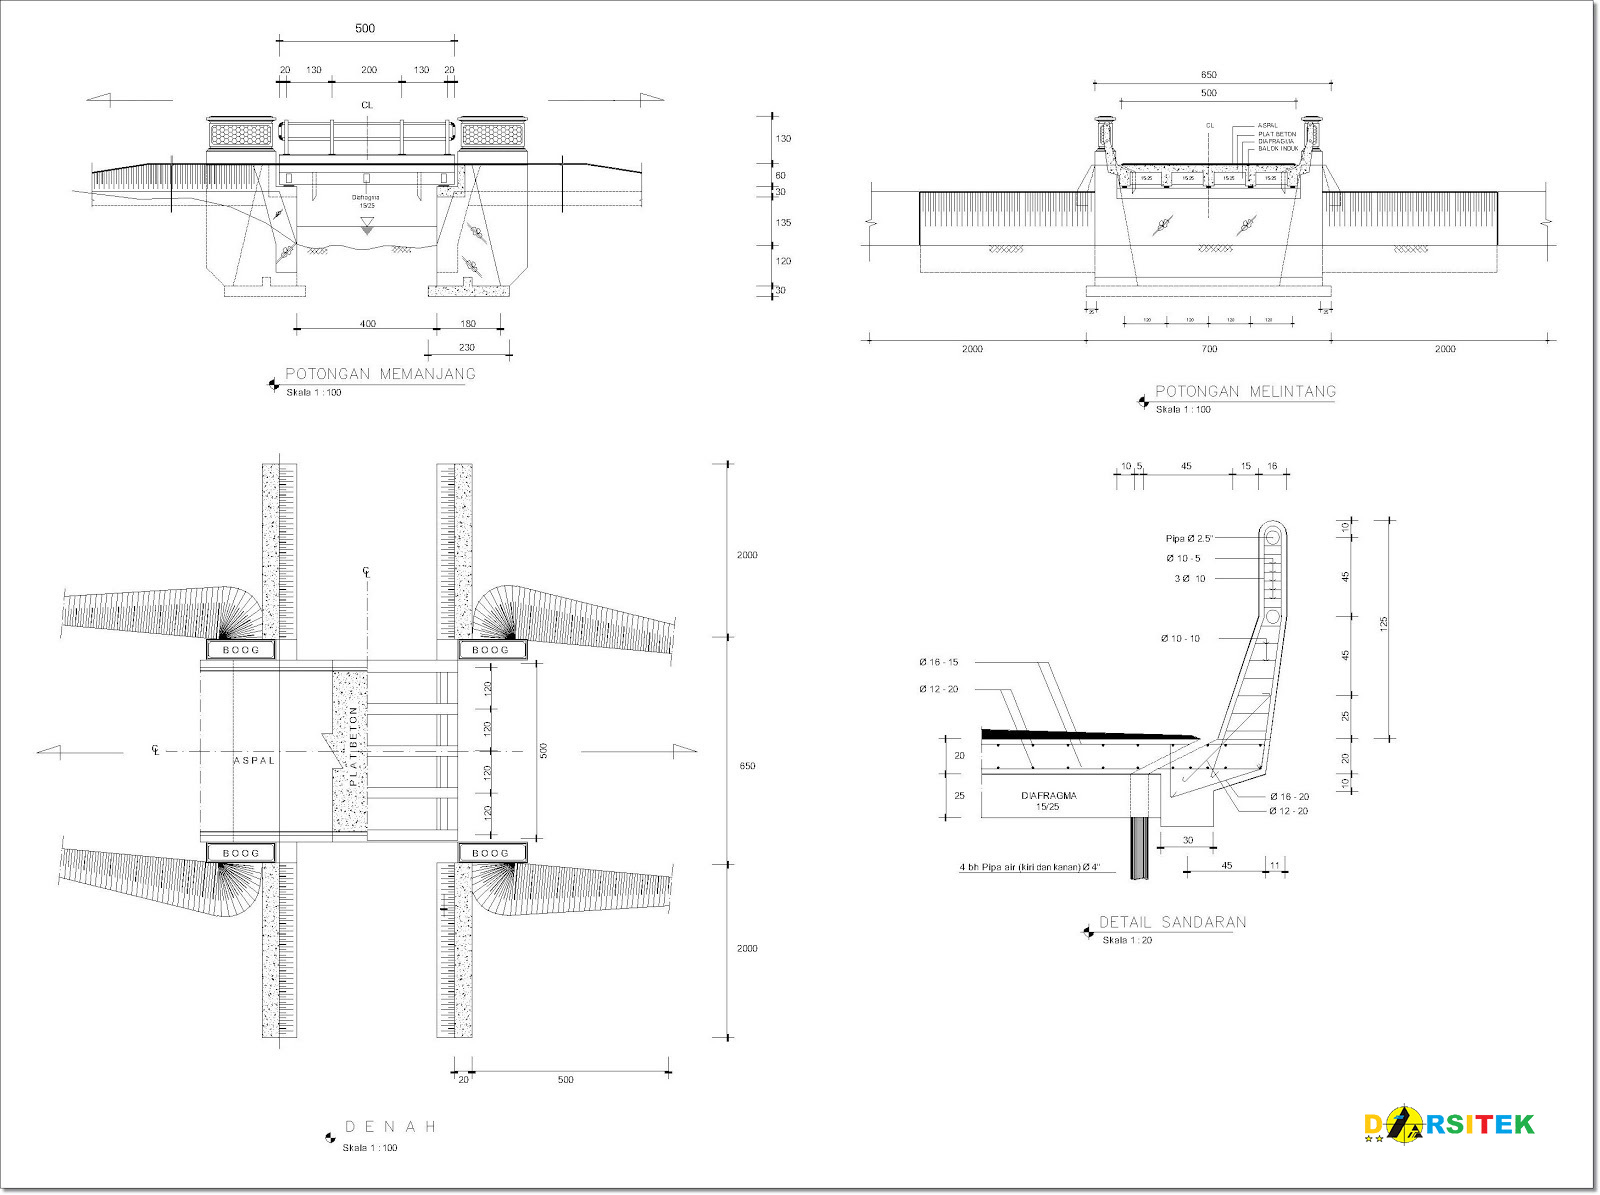 Contoh Desain Gambar Jembatan Dengan Bentang 5 Meter Asdar Id